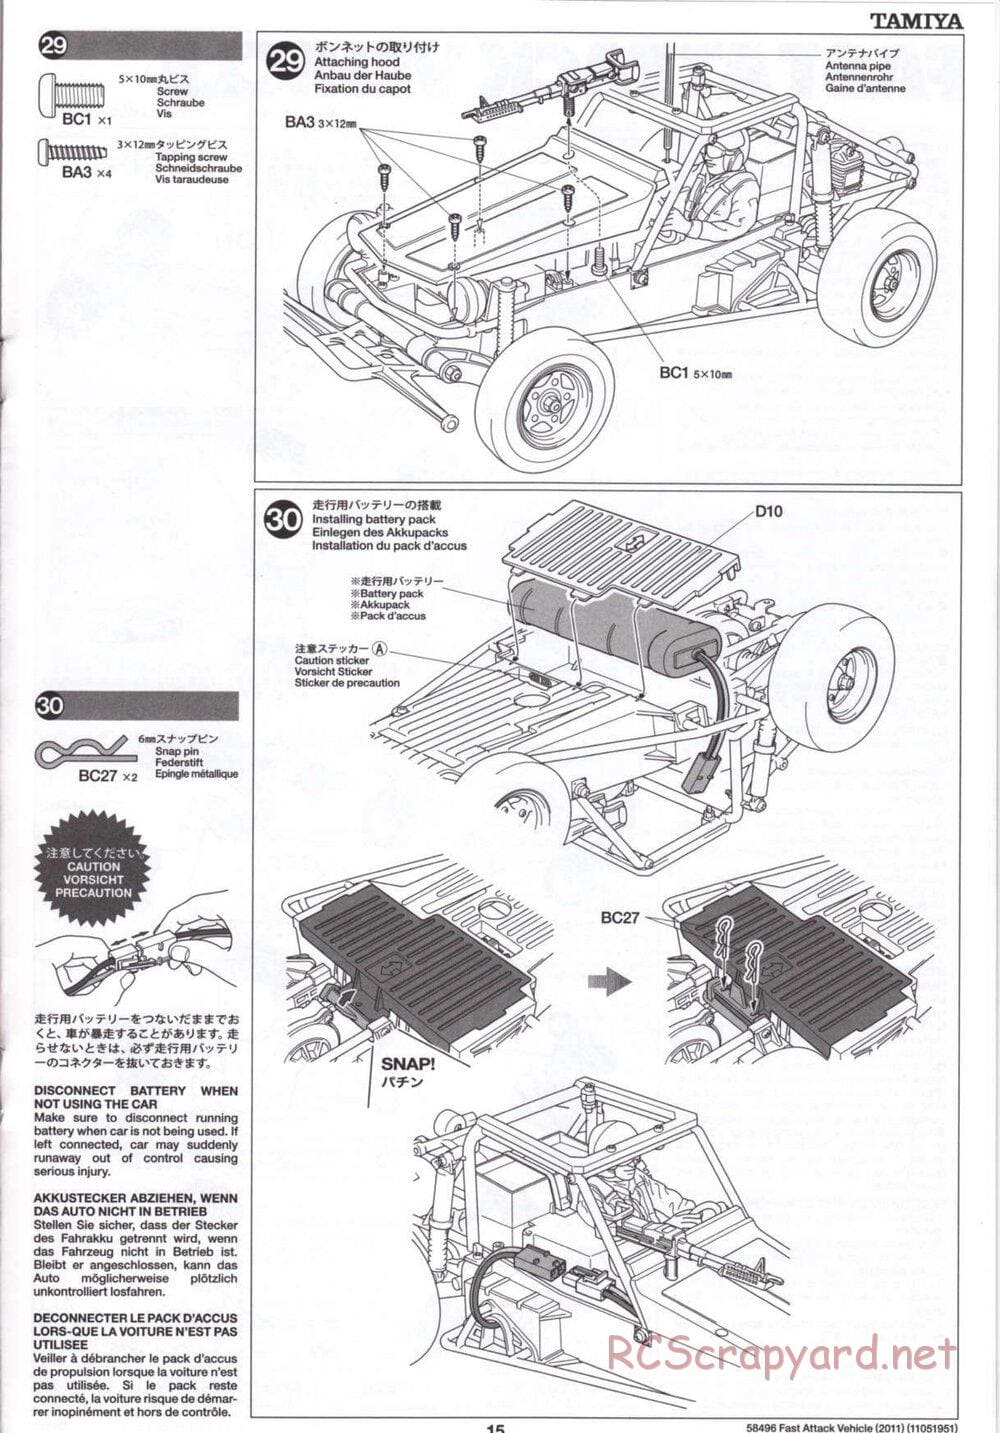 Tamiya - Fast Attack Vehicle 2011 - FAV Chassis - Manual - Page 15